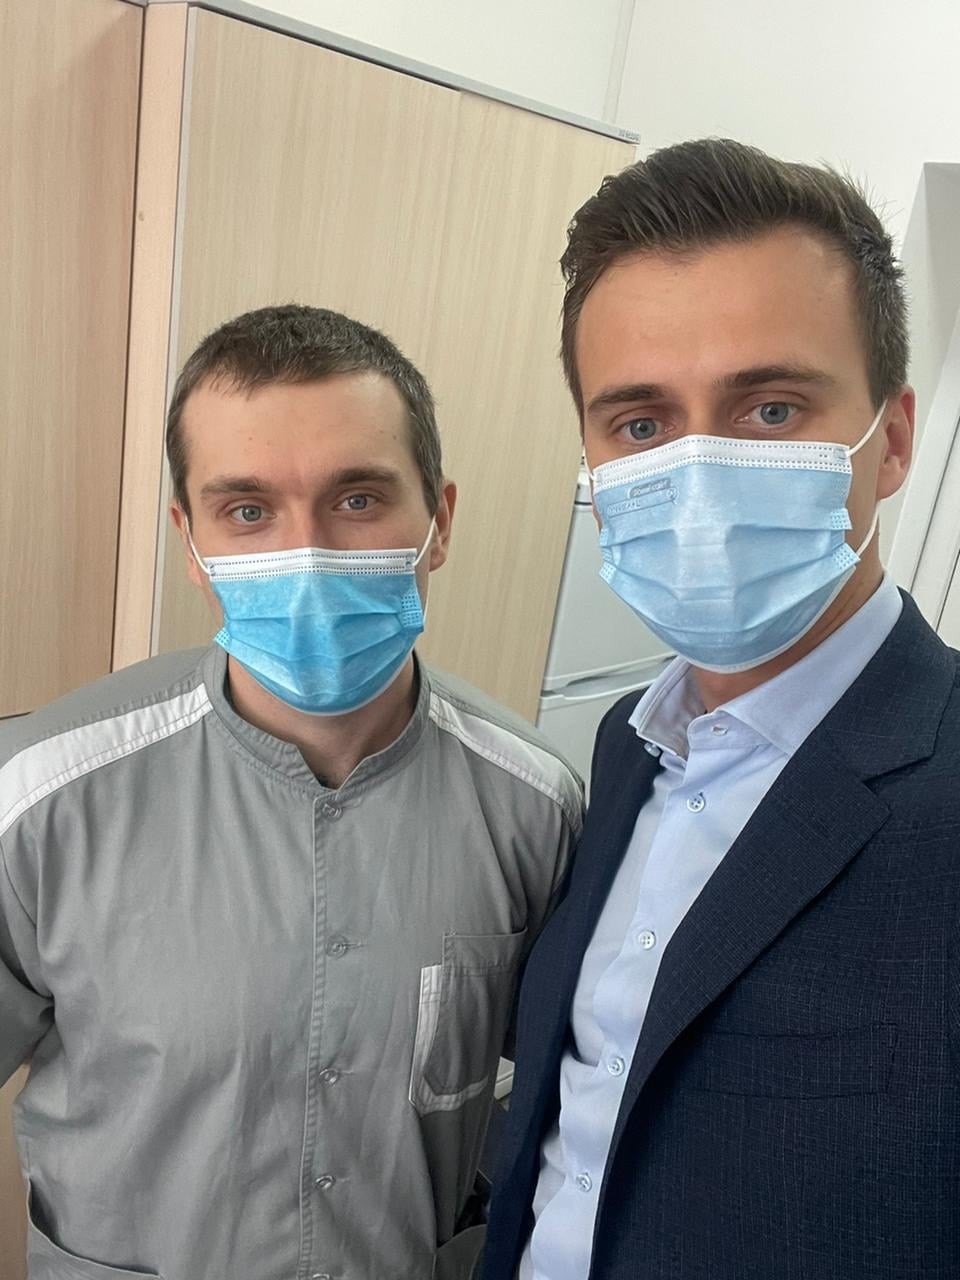 24 февраля в Украине сделали первую прививку от коронавируса. Об этом сообщил глава Черкасской облгосадминистрации Александр Скичко.